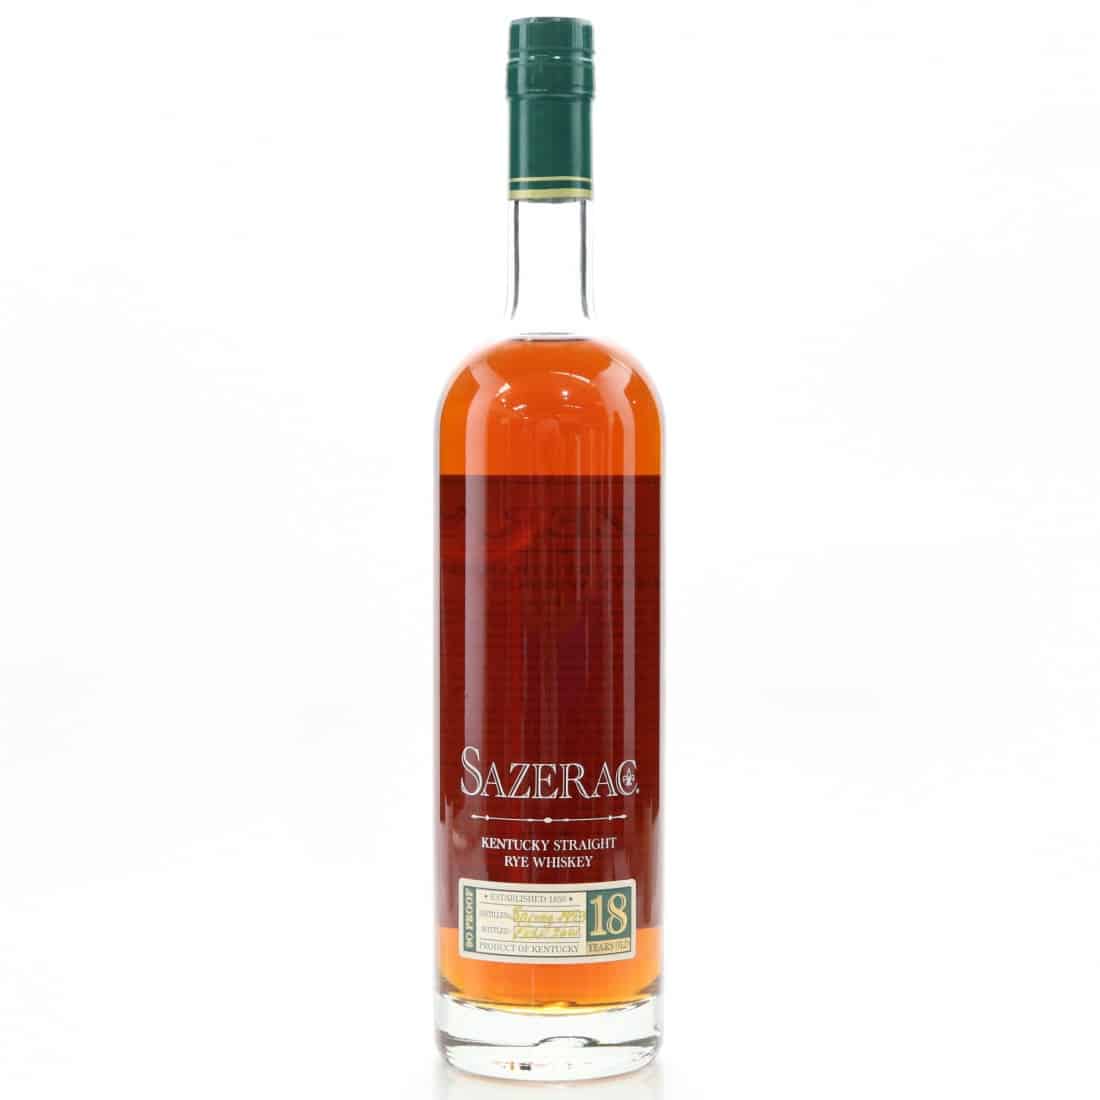 Sazerac 18-Year-Old Rye Whiskey